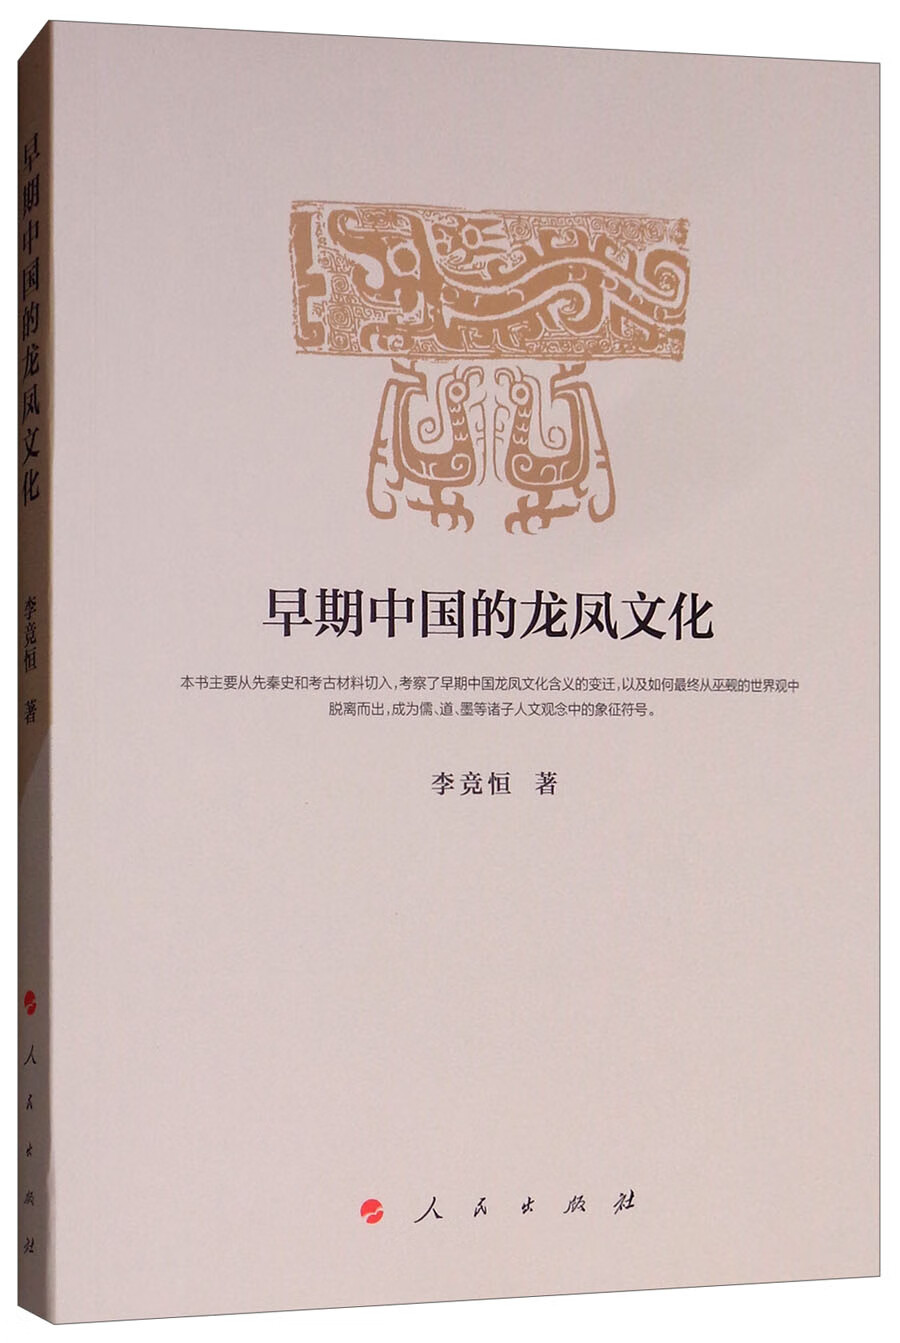 早期中国的龙凤文化 kindle格式下载